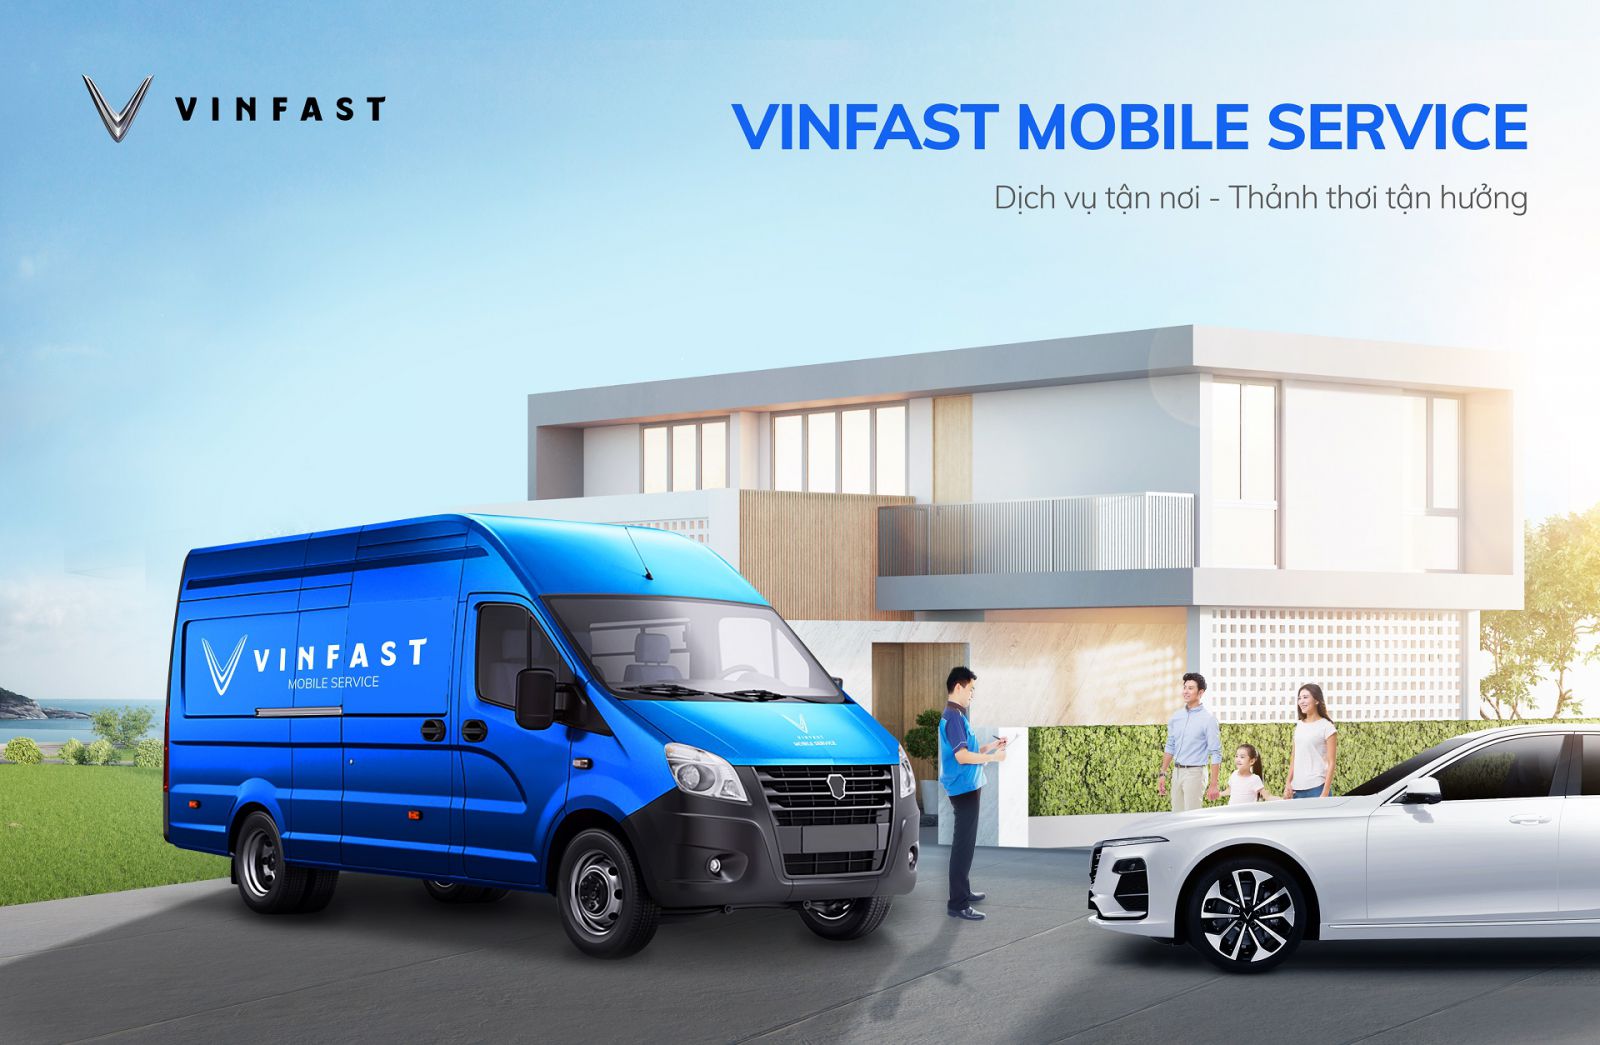 VinFast cũng cho biết sẽ luôn nỗ lực để bổ sung thêm các giá trị gia tăng cho khách hàng